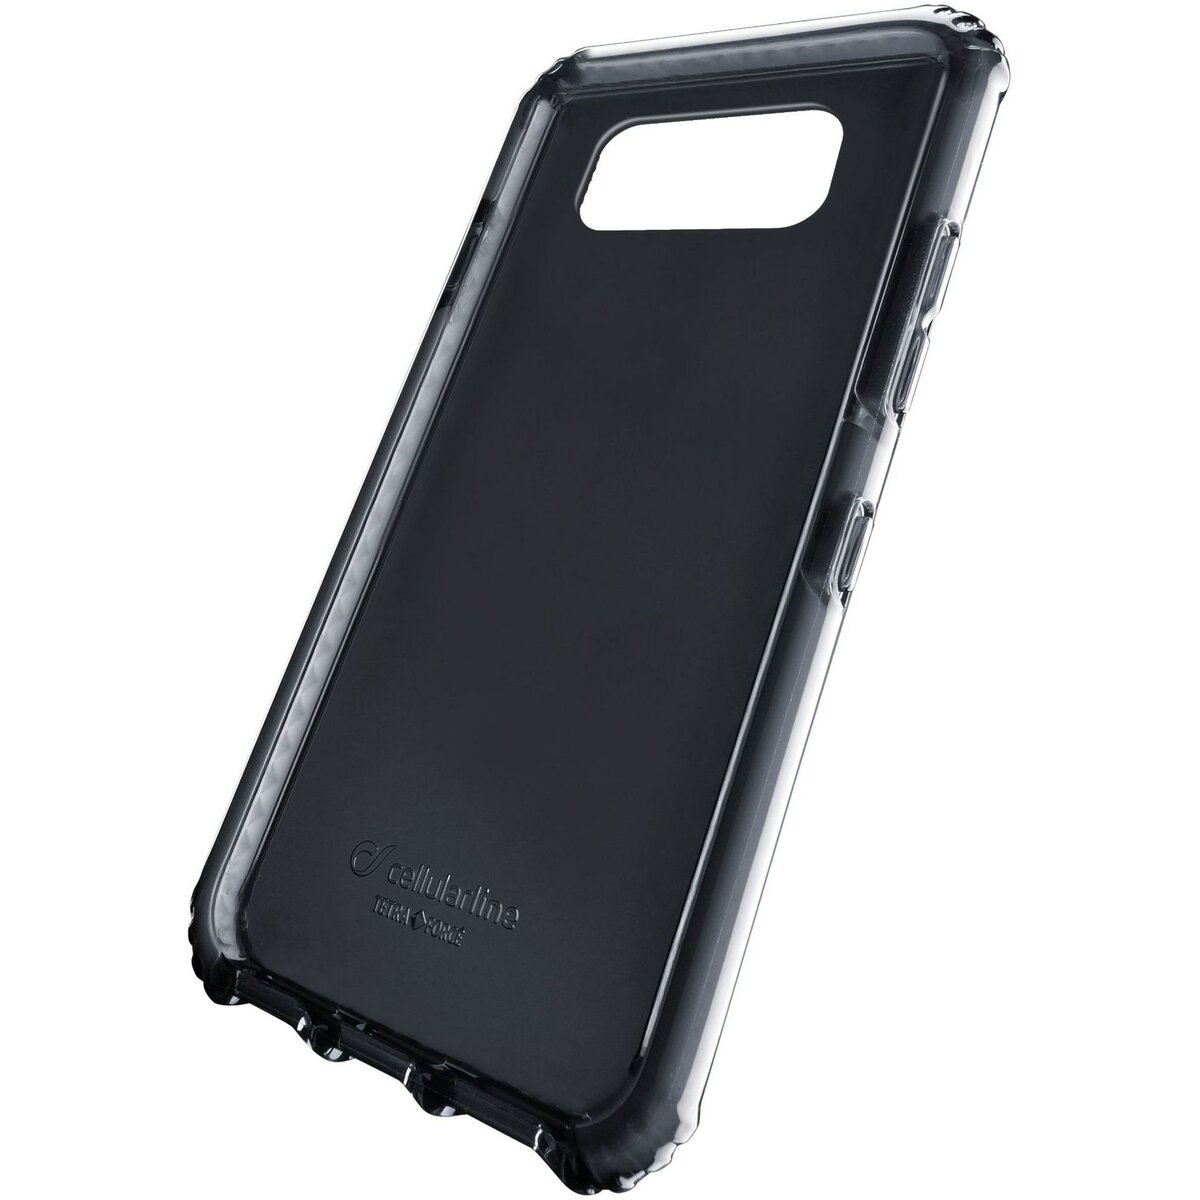 CELLULAR Coque en silicone renforcée noir anti choc pour Samsung Galaxy S8